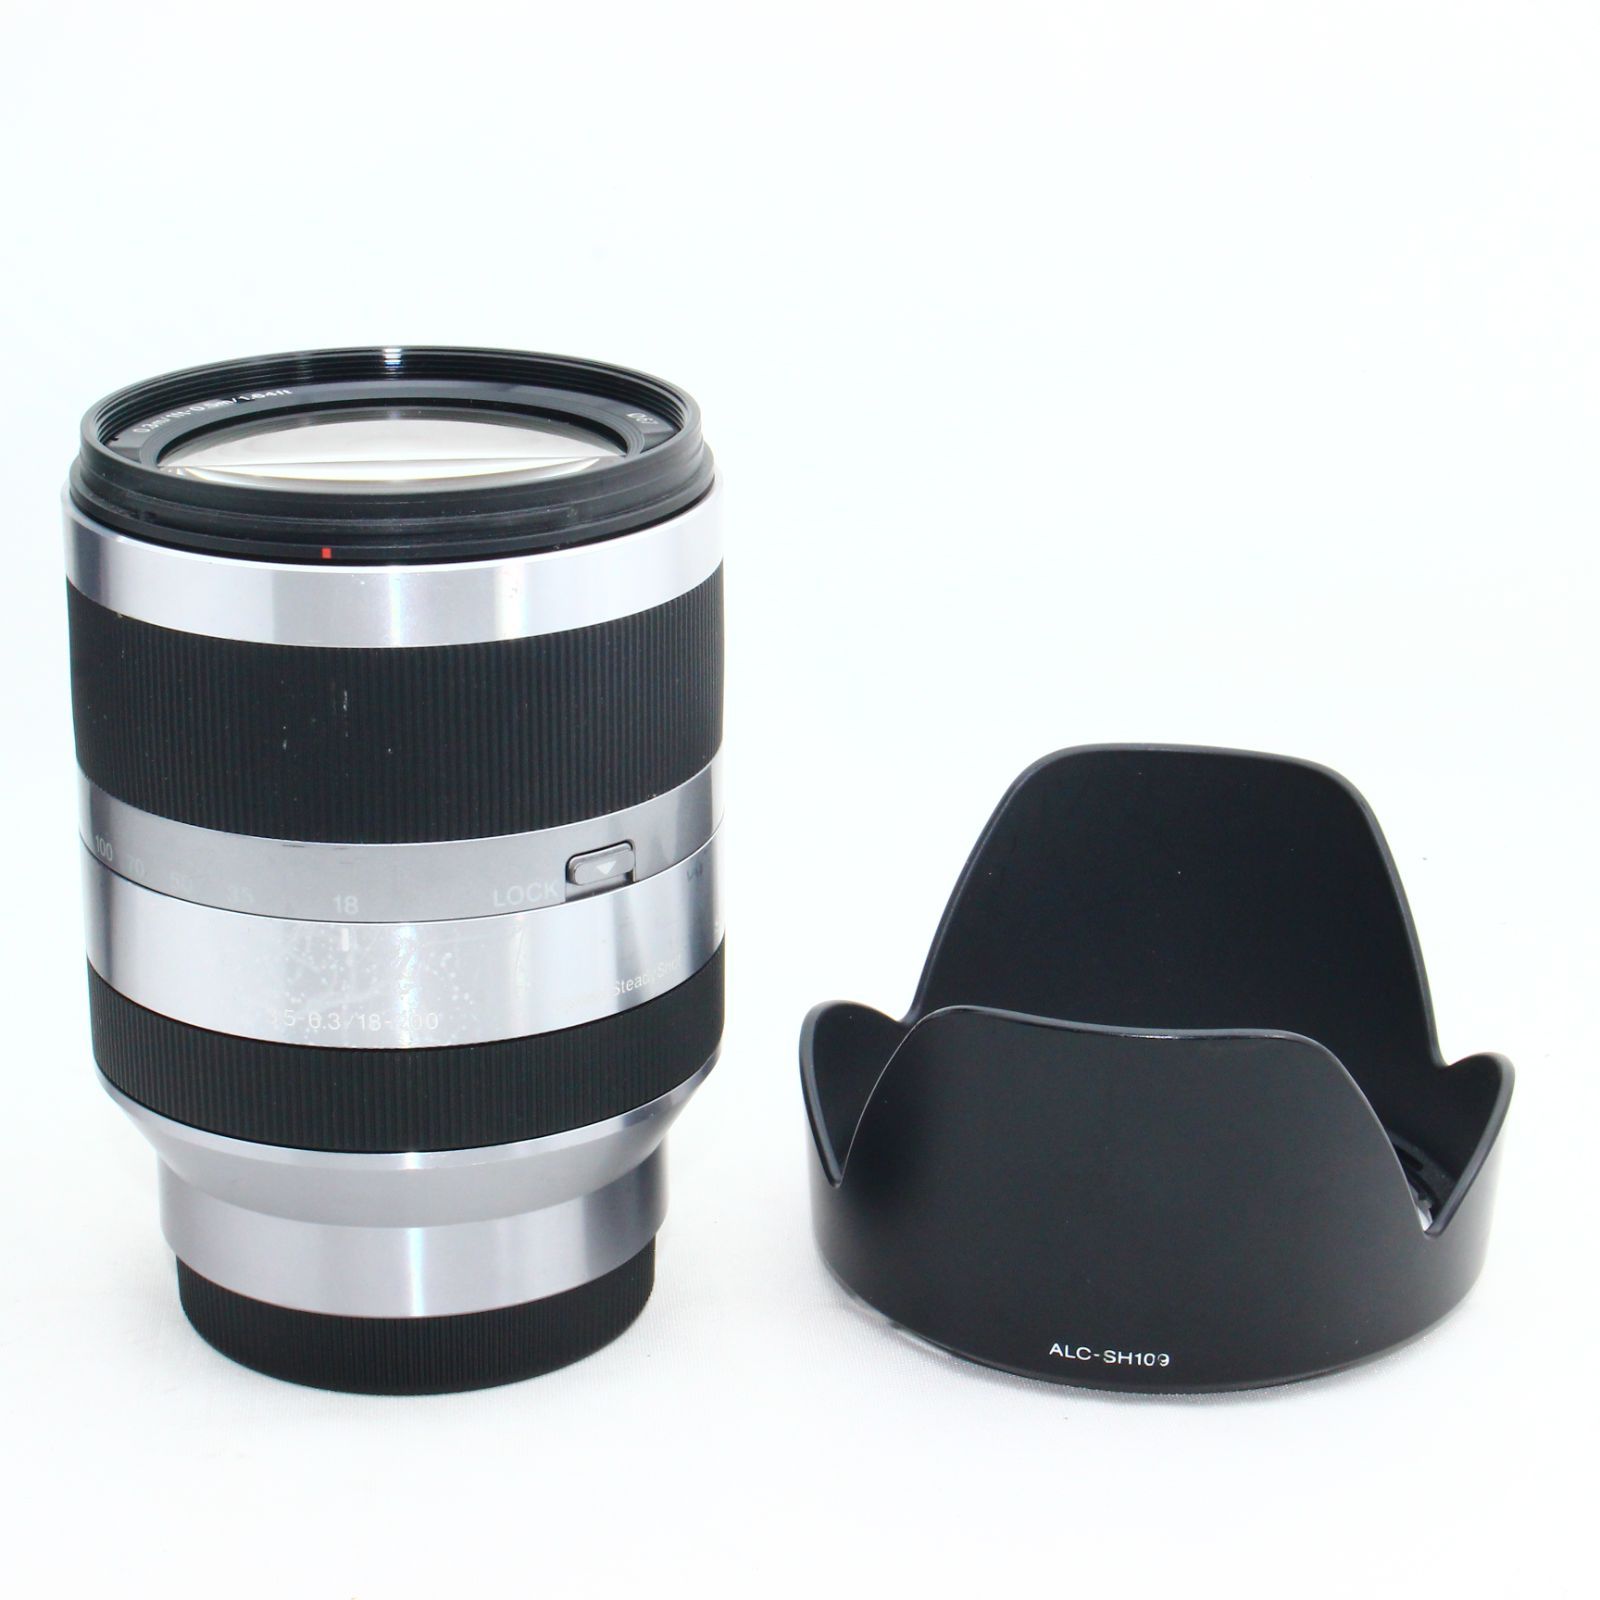 SONY SEL18200 F3.5-6.3 18-200mm OSS レンズ